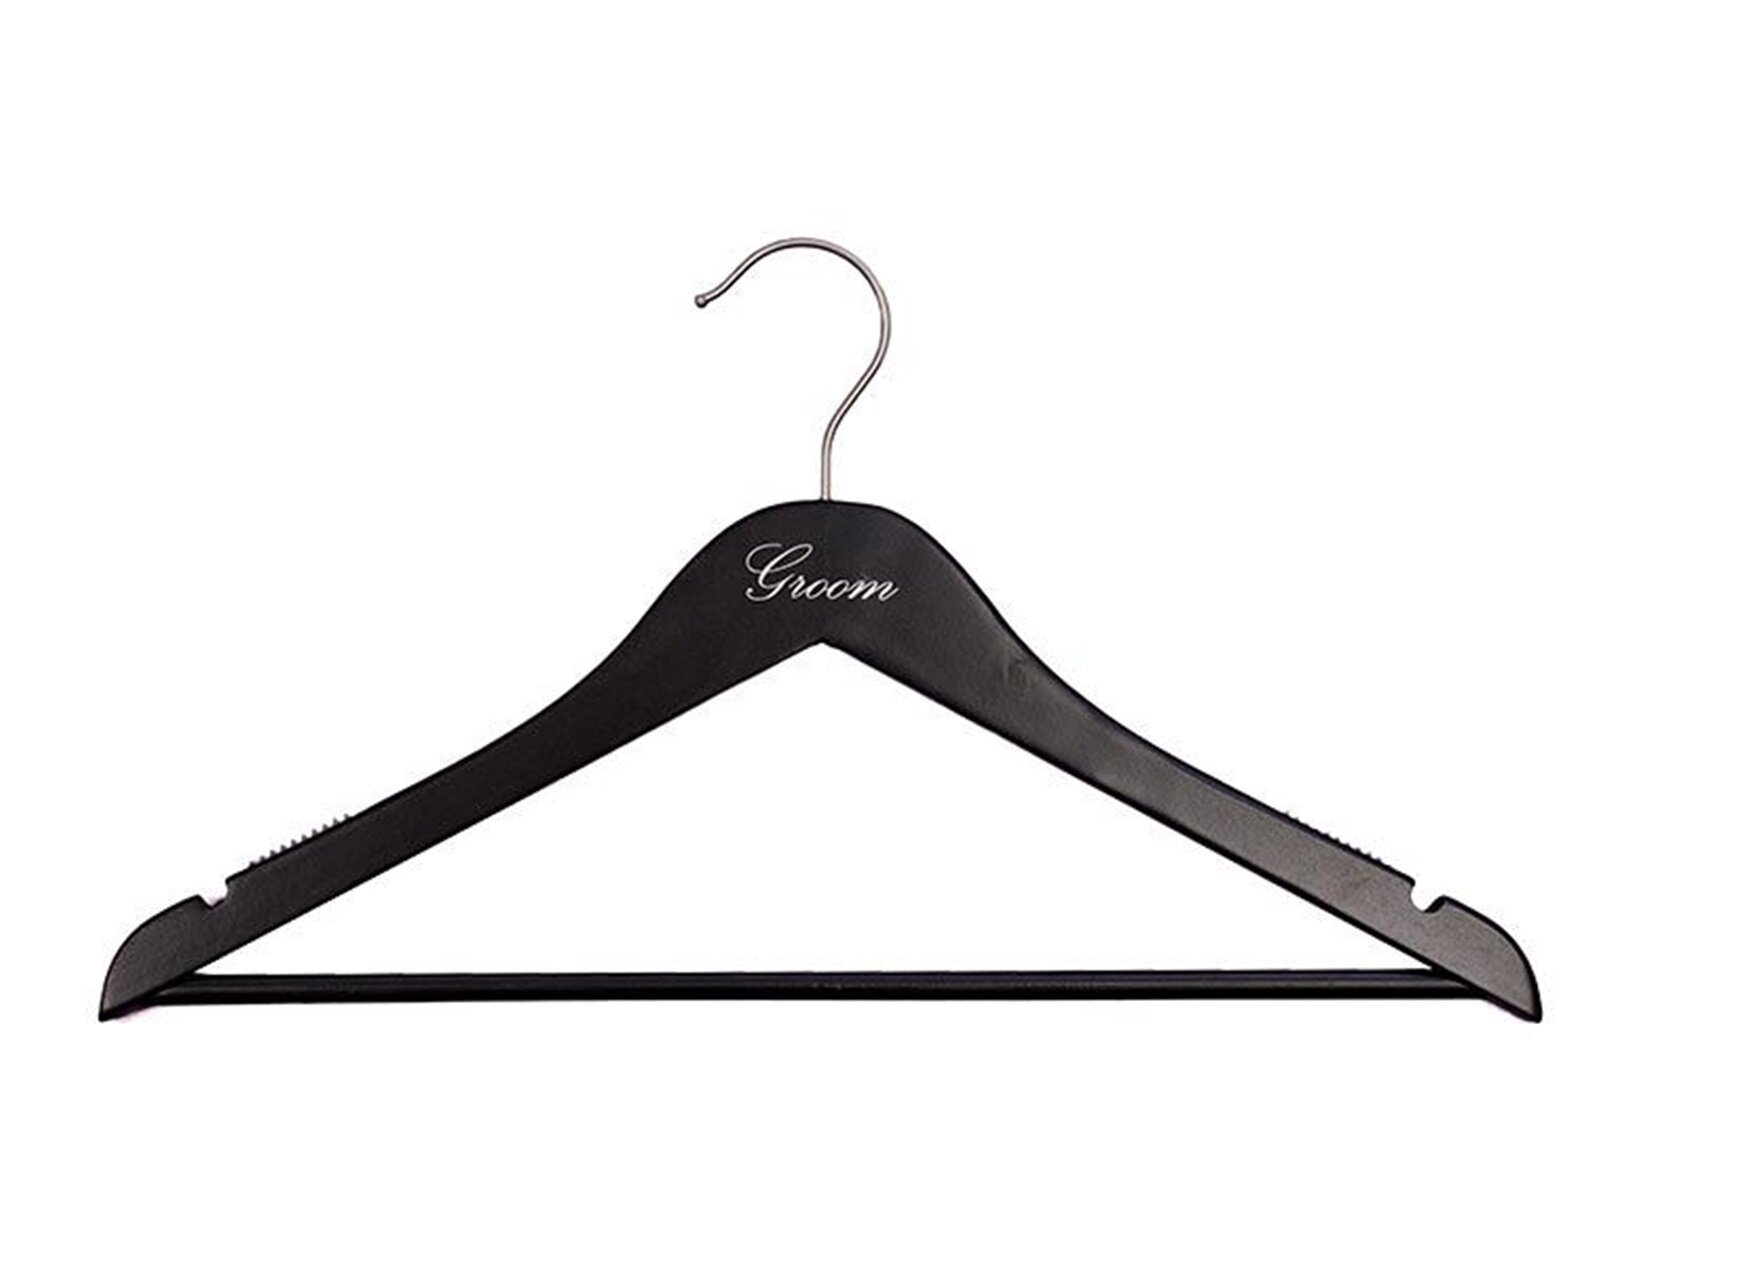 SereneLife Plastic Non-Slip Standard Hanger for Dress/Shirt/Sweater